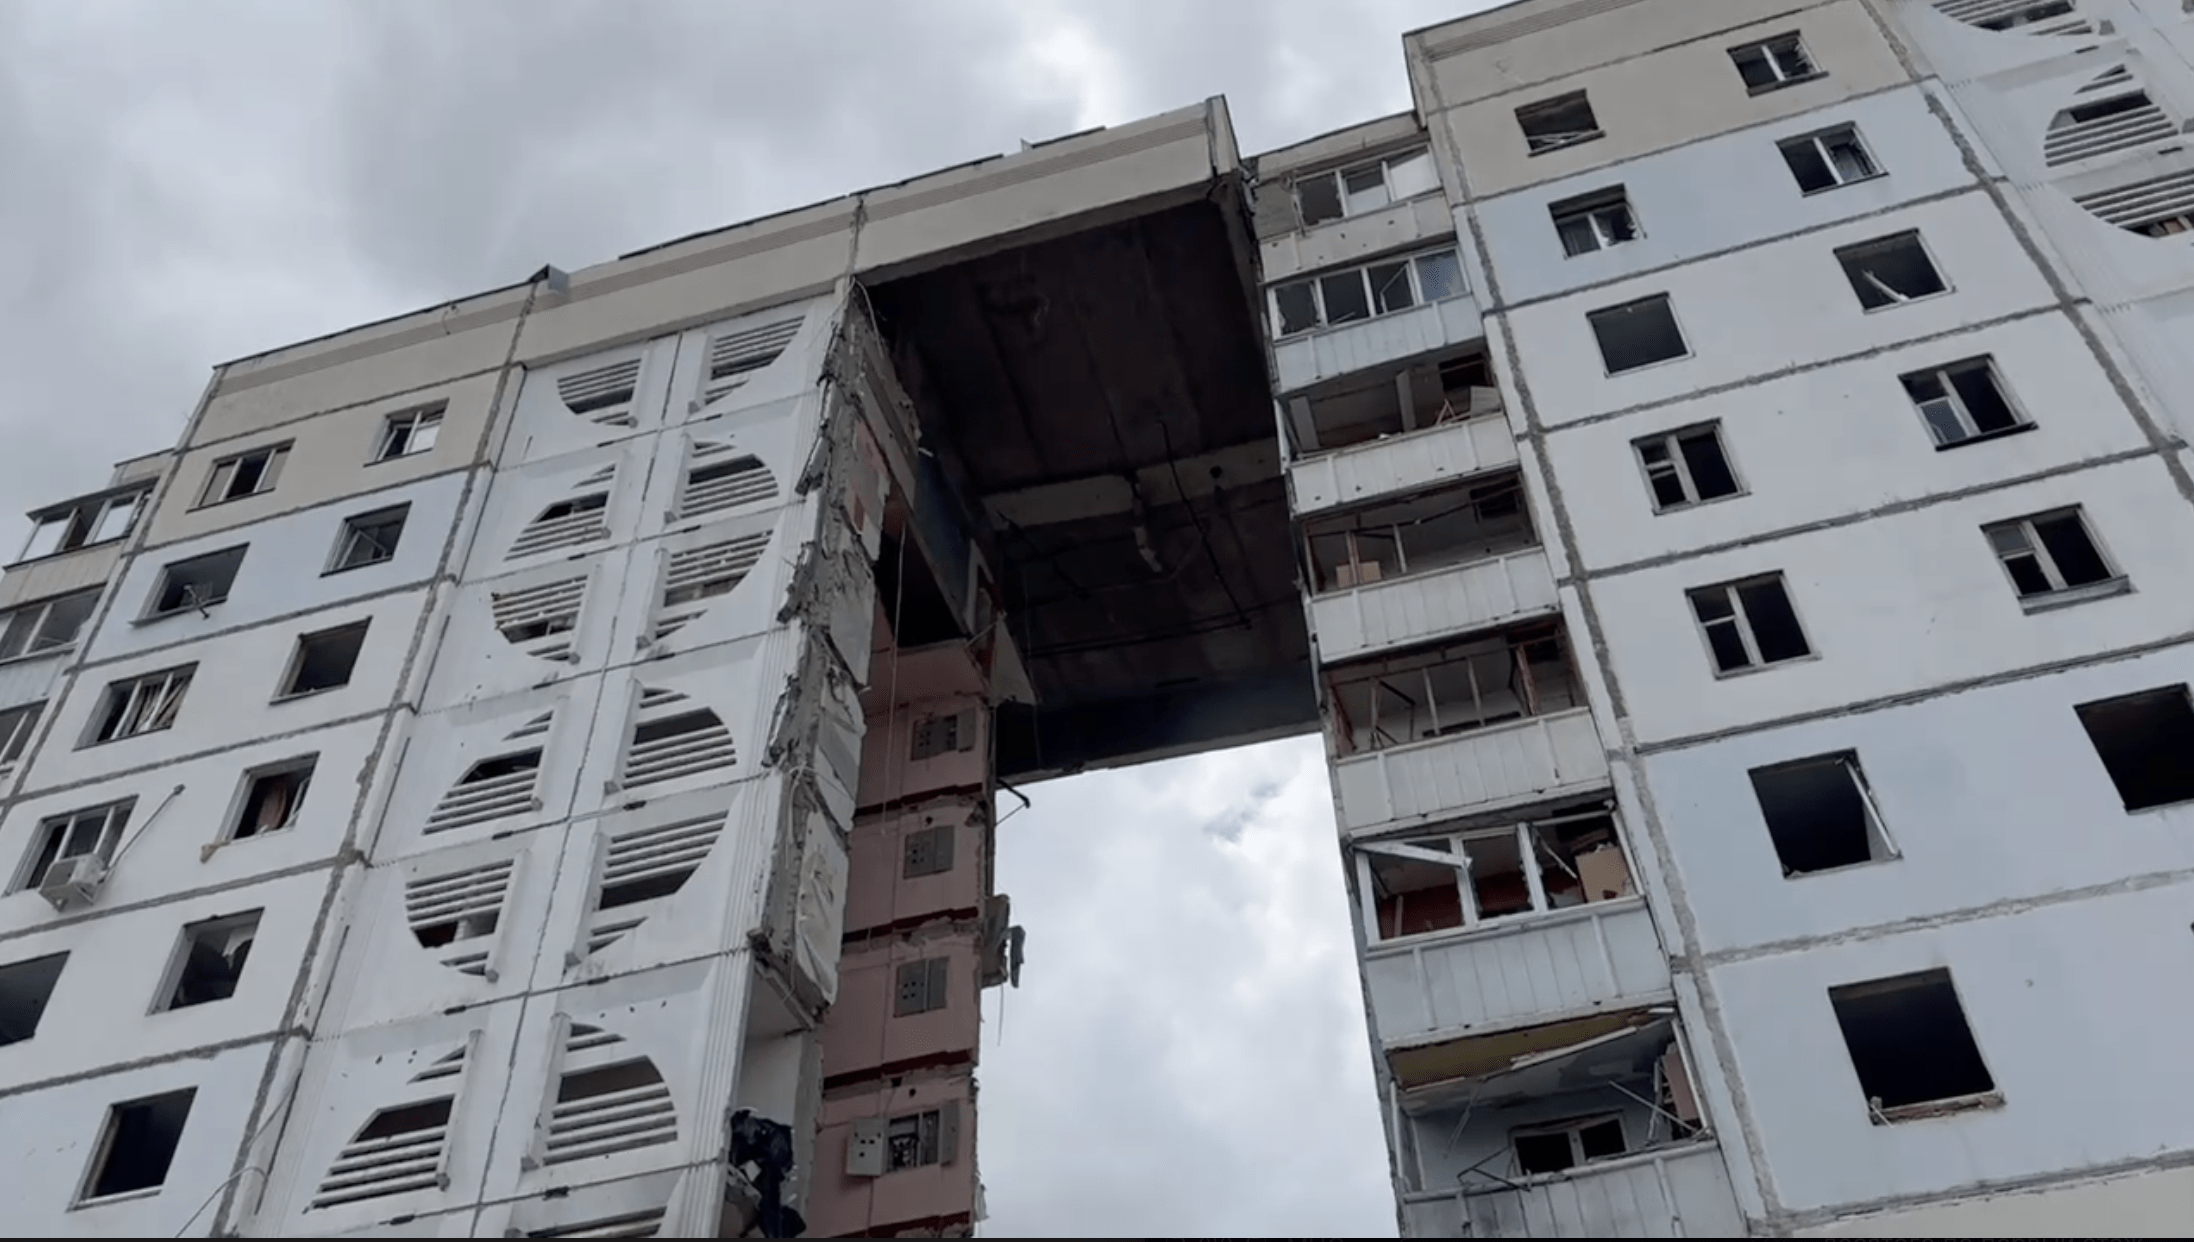 После теракта в Белгороде произошло повторное обрушение дома